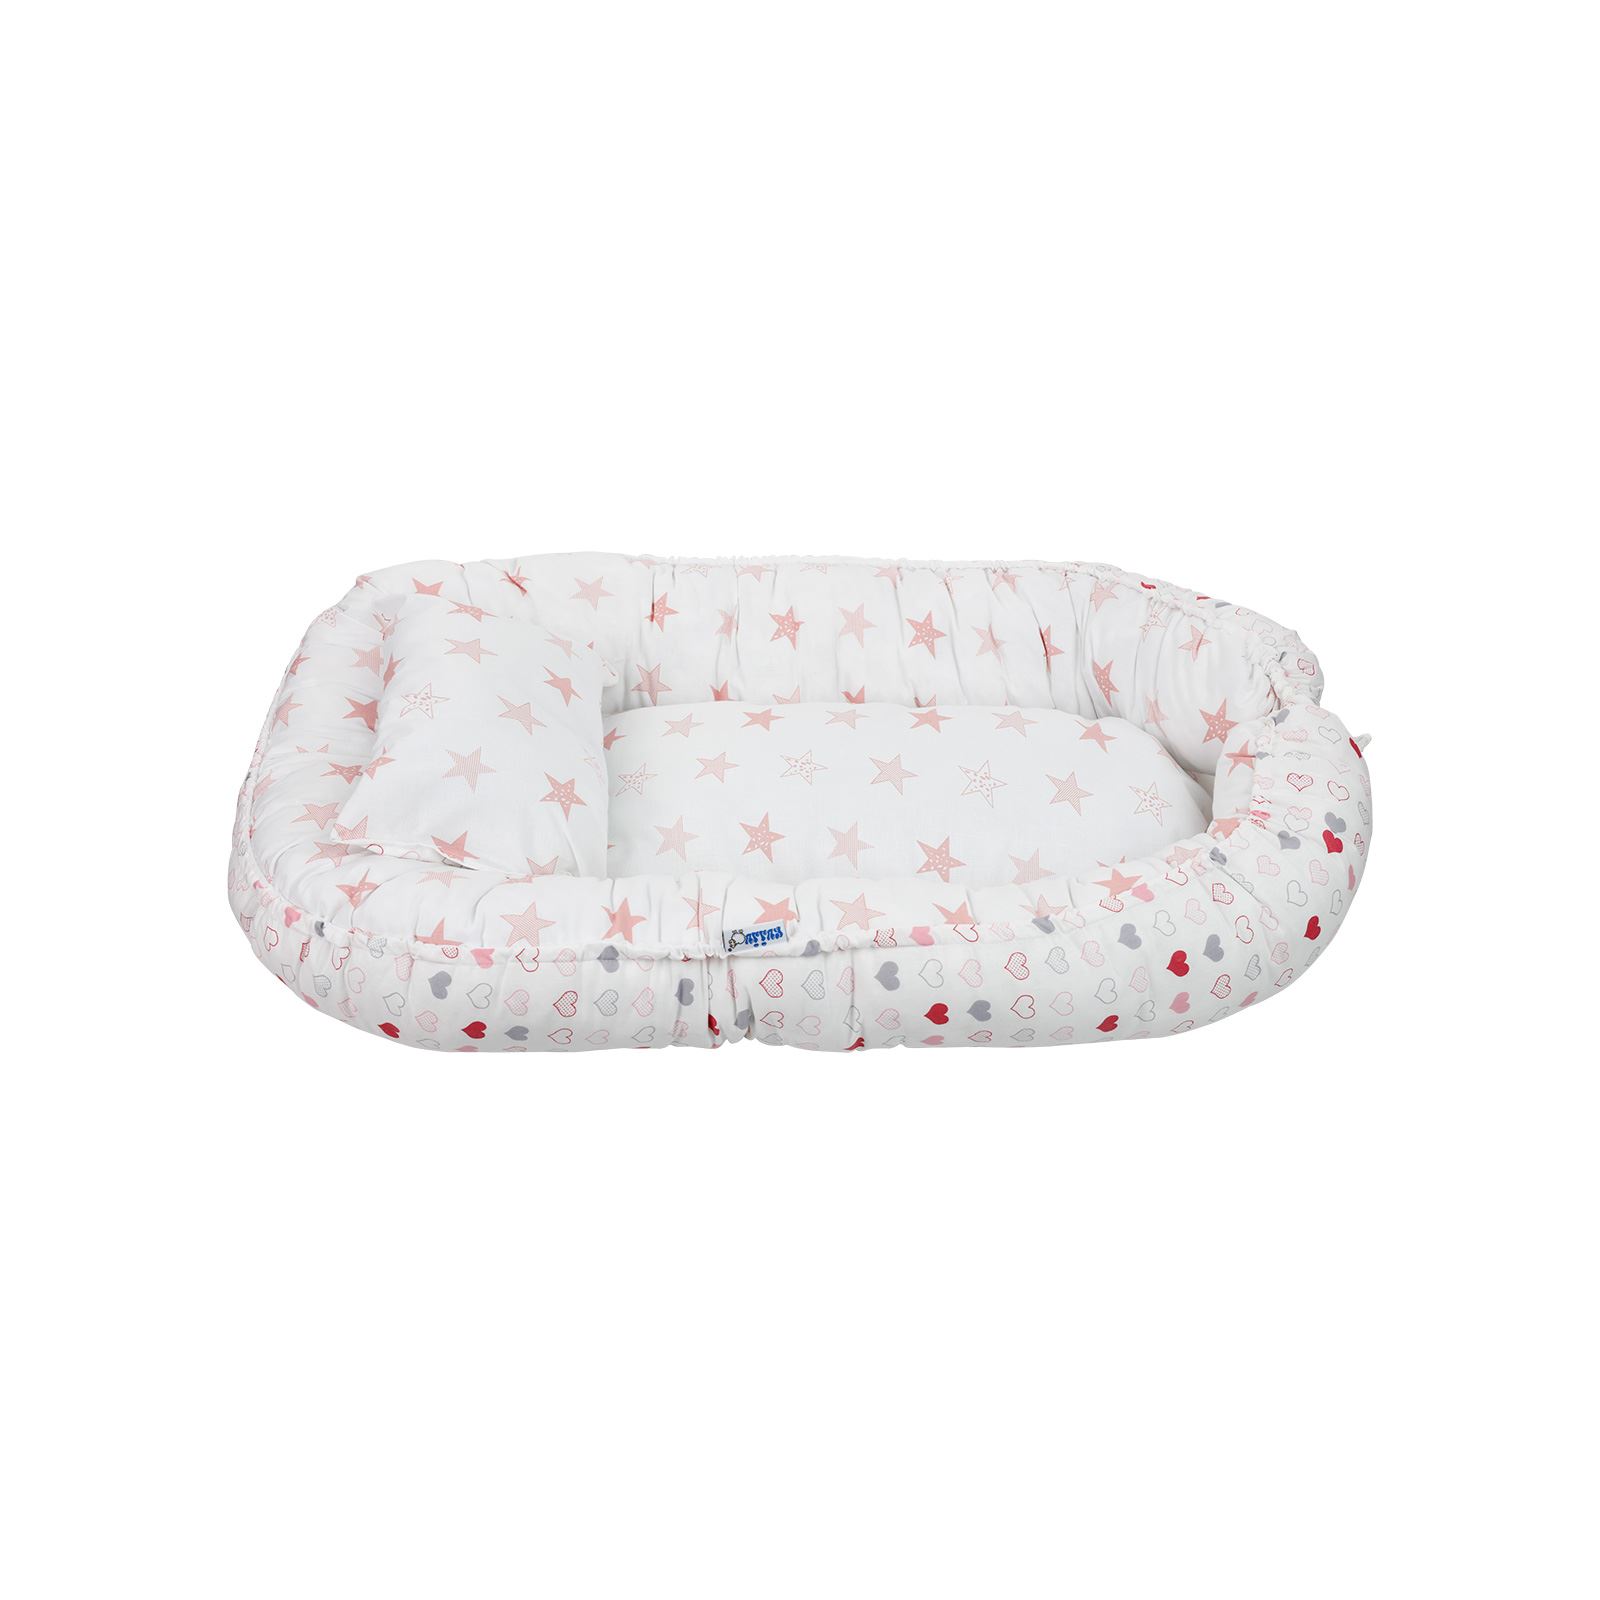 Kujju Babynest Bebek Uyku Yatağı 45x70 cm Beyaz